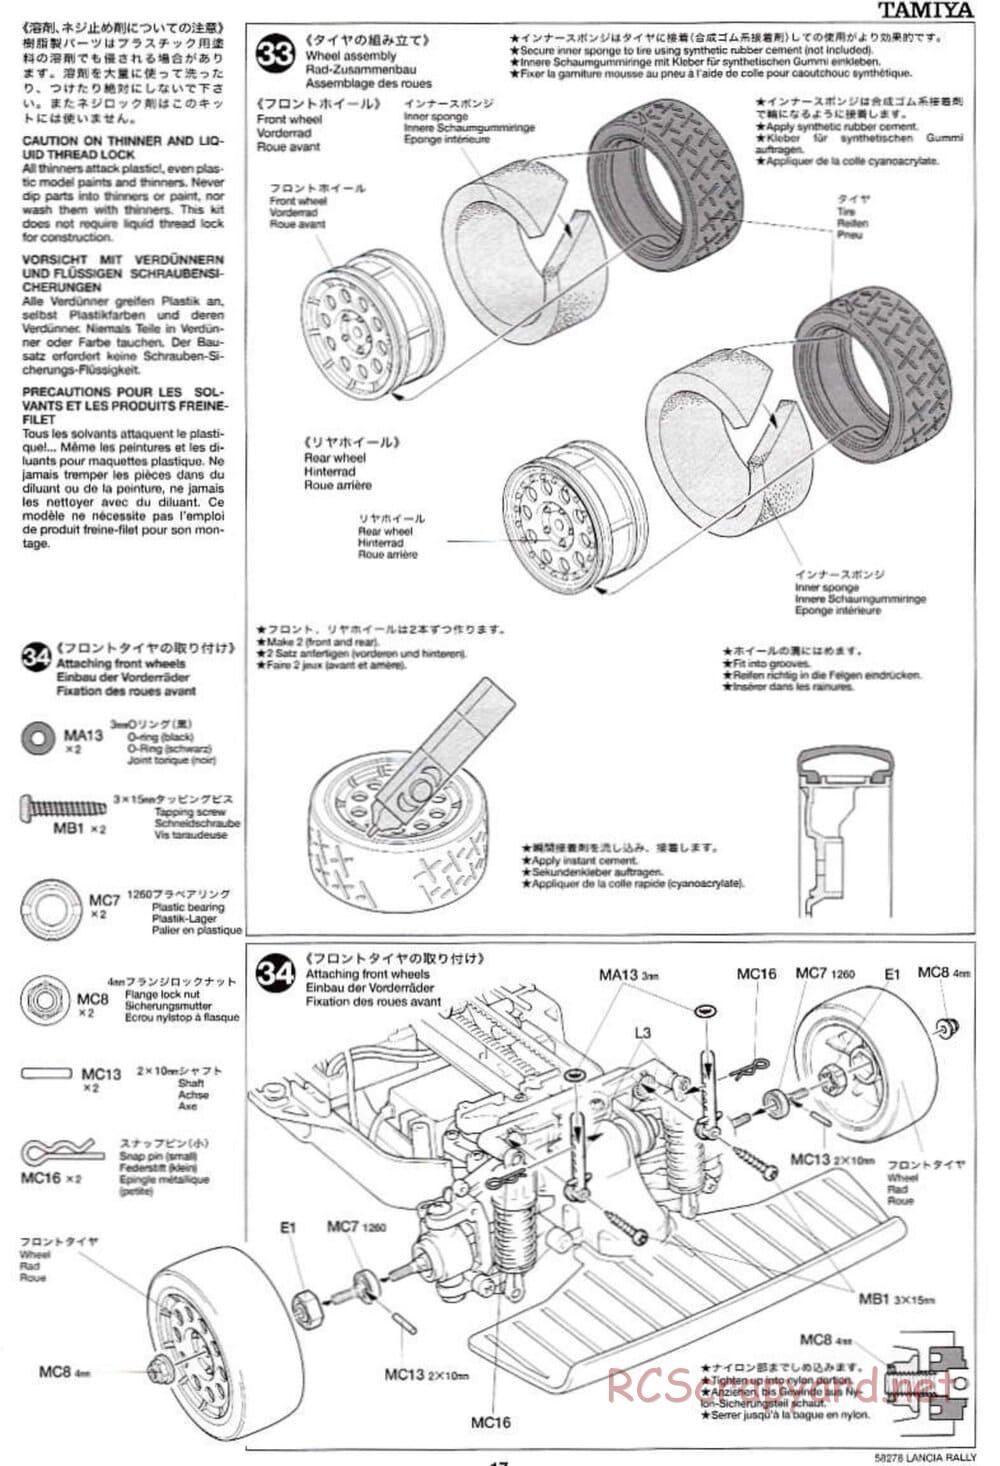 Tamiya - Lancia 037 Rally - TA-03RS Chassis - Manual - Page 17